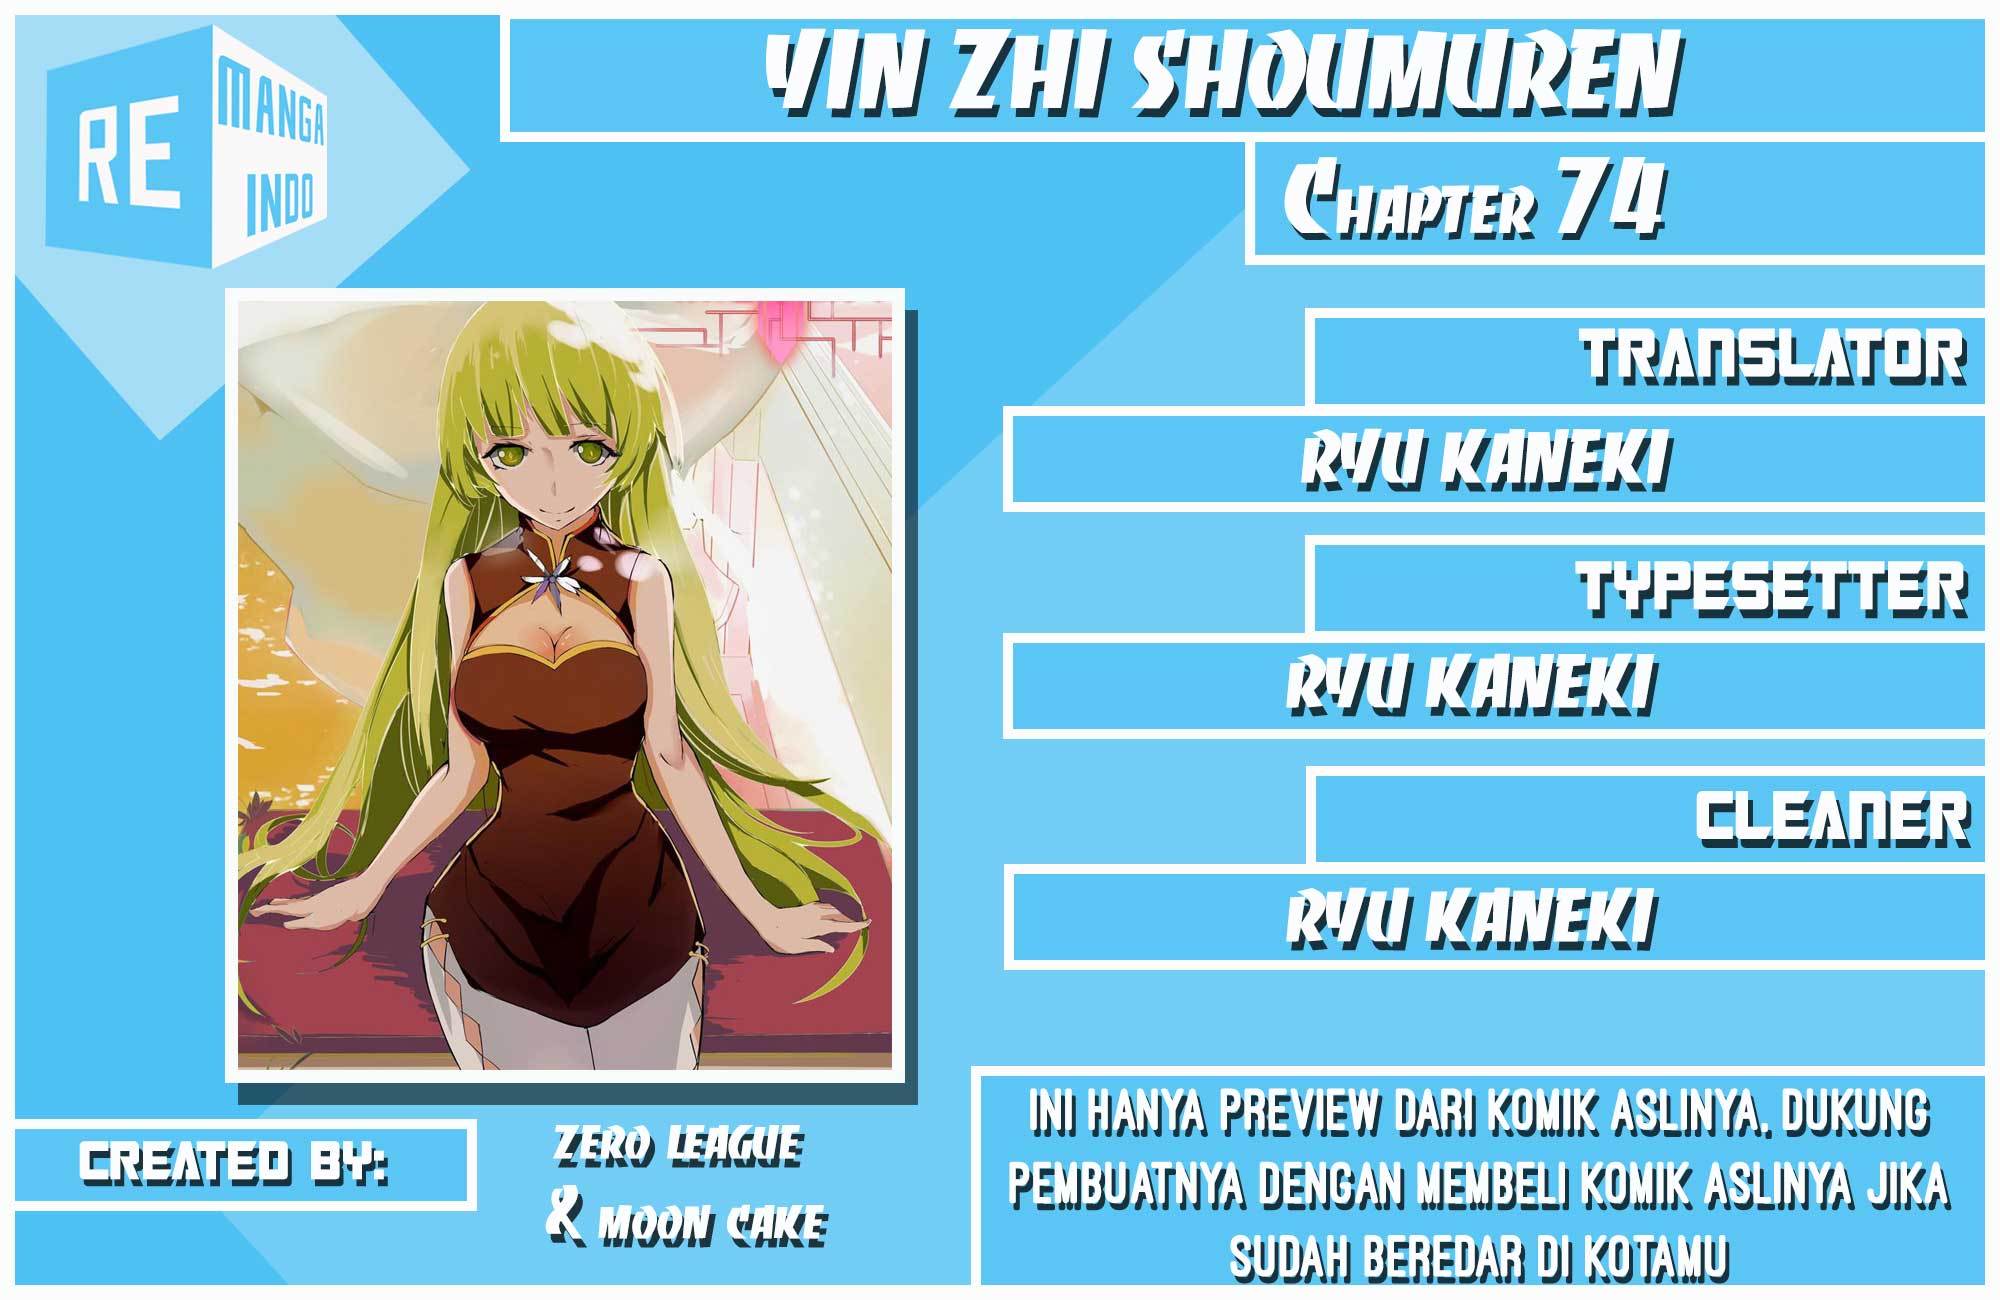 Yin Zhi Shoumuren Chapter 74